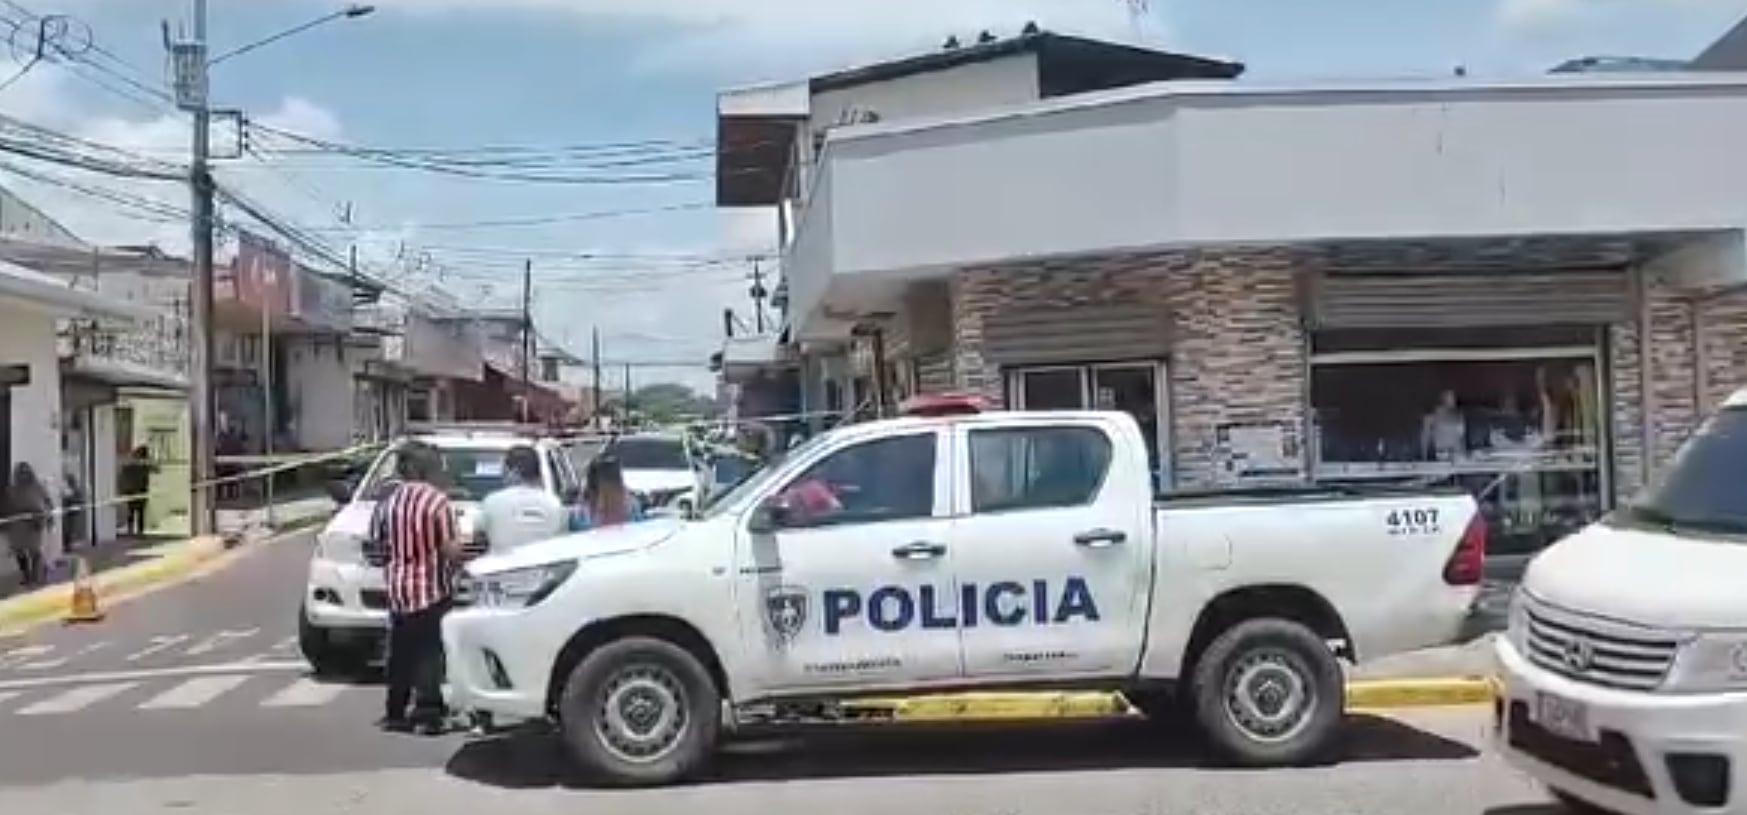 La Fuerza Pública estableció un perímetro de seguridad en los alrededores de la joyería que fue asaltada este lunes en Liberia, Guanacaste.